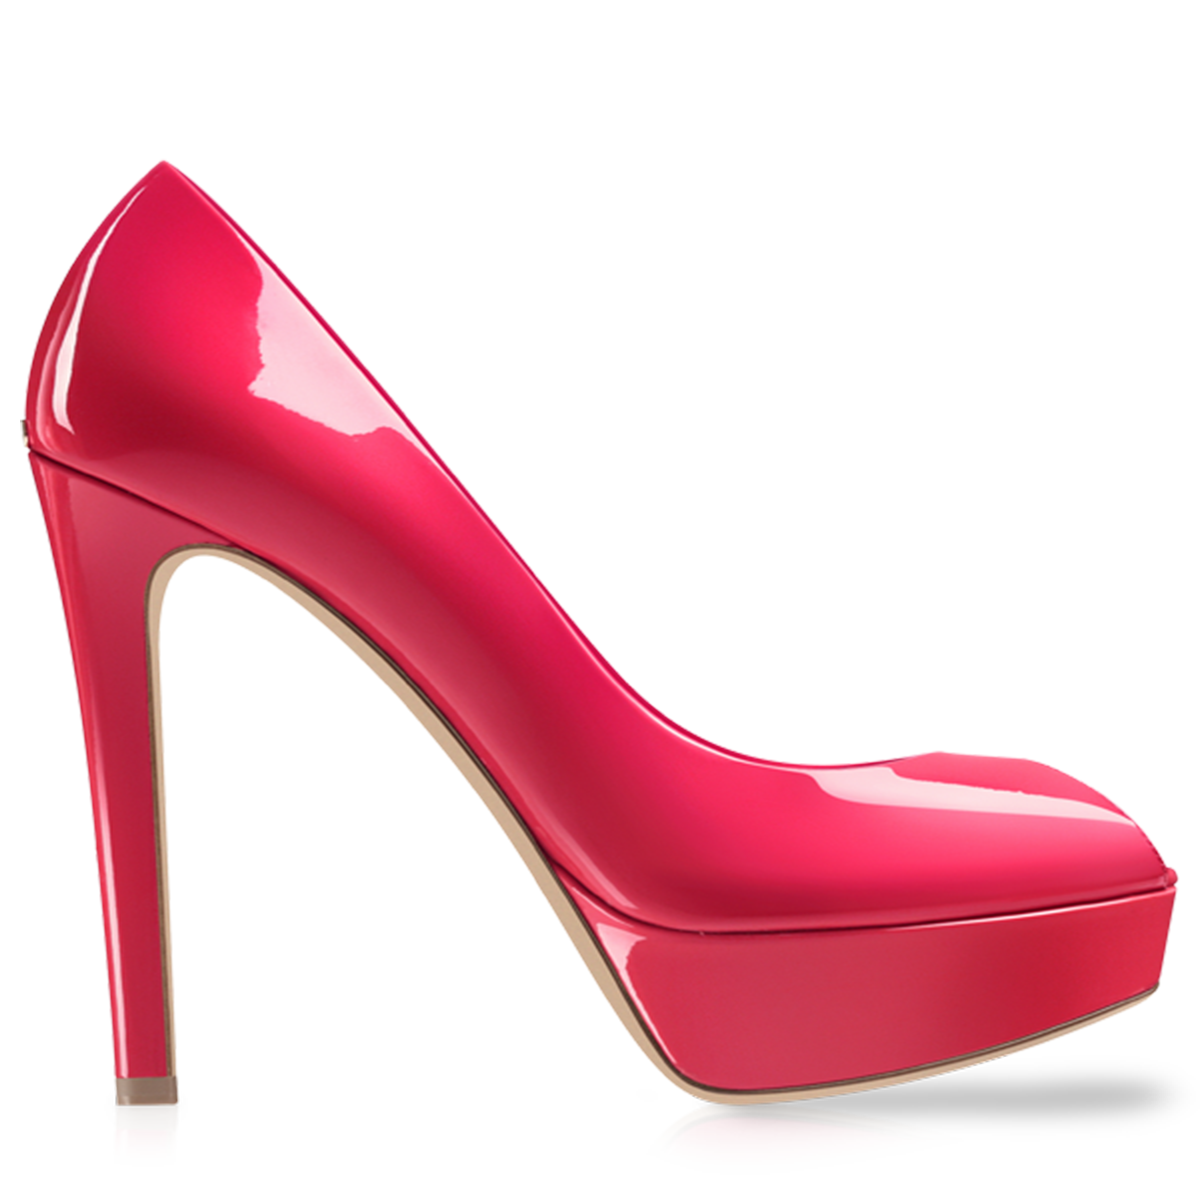 Kheila Pink Women Shoe PNG Image